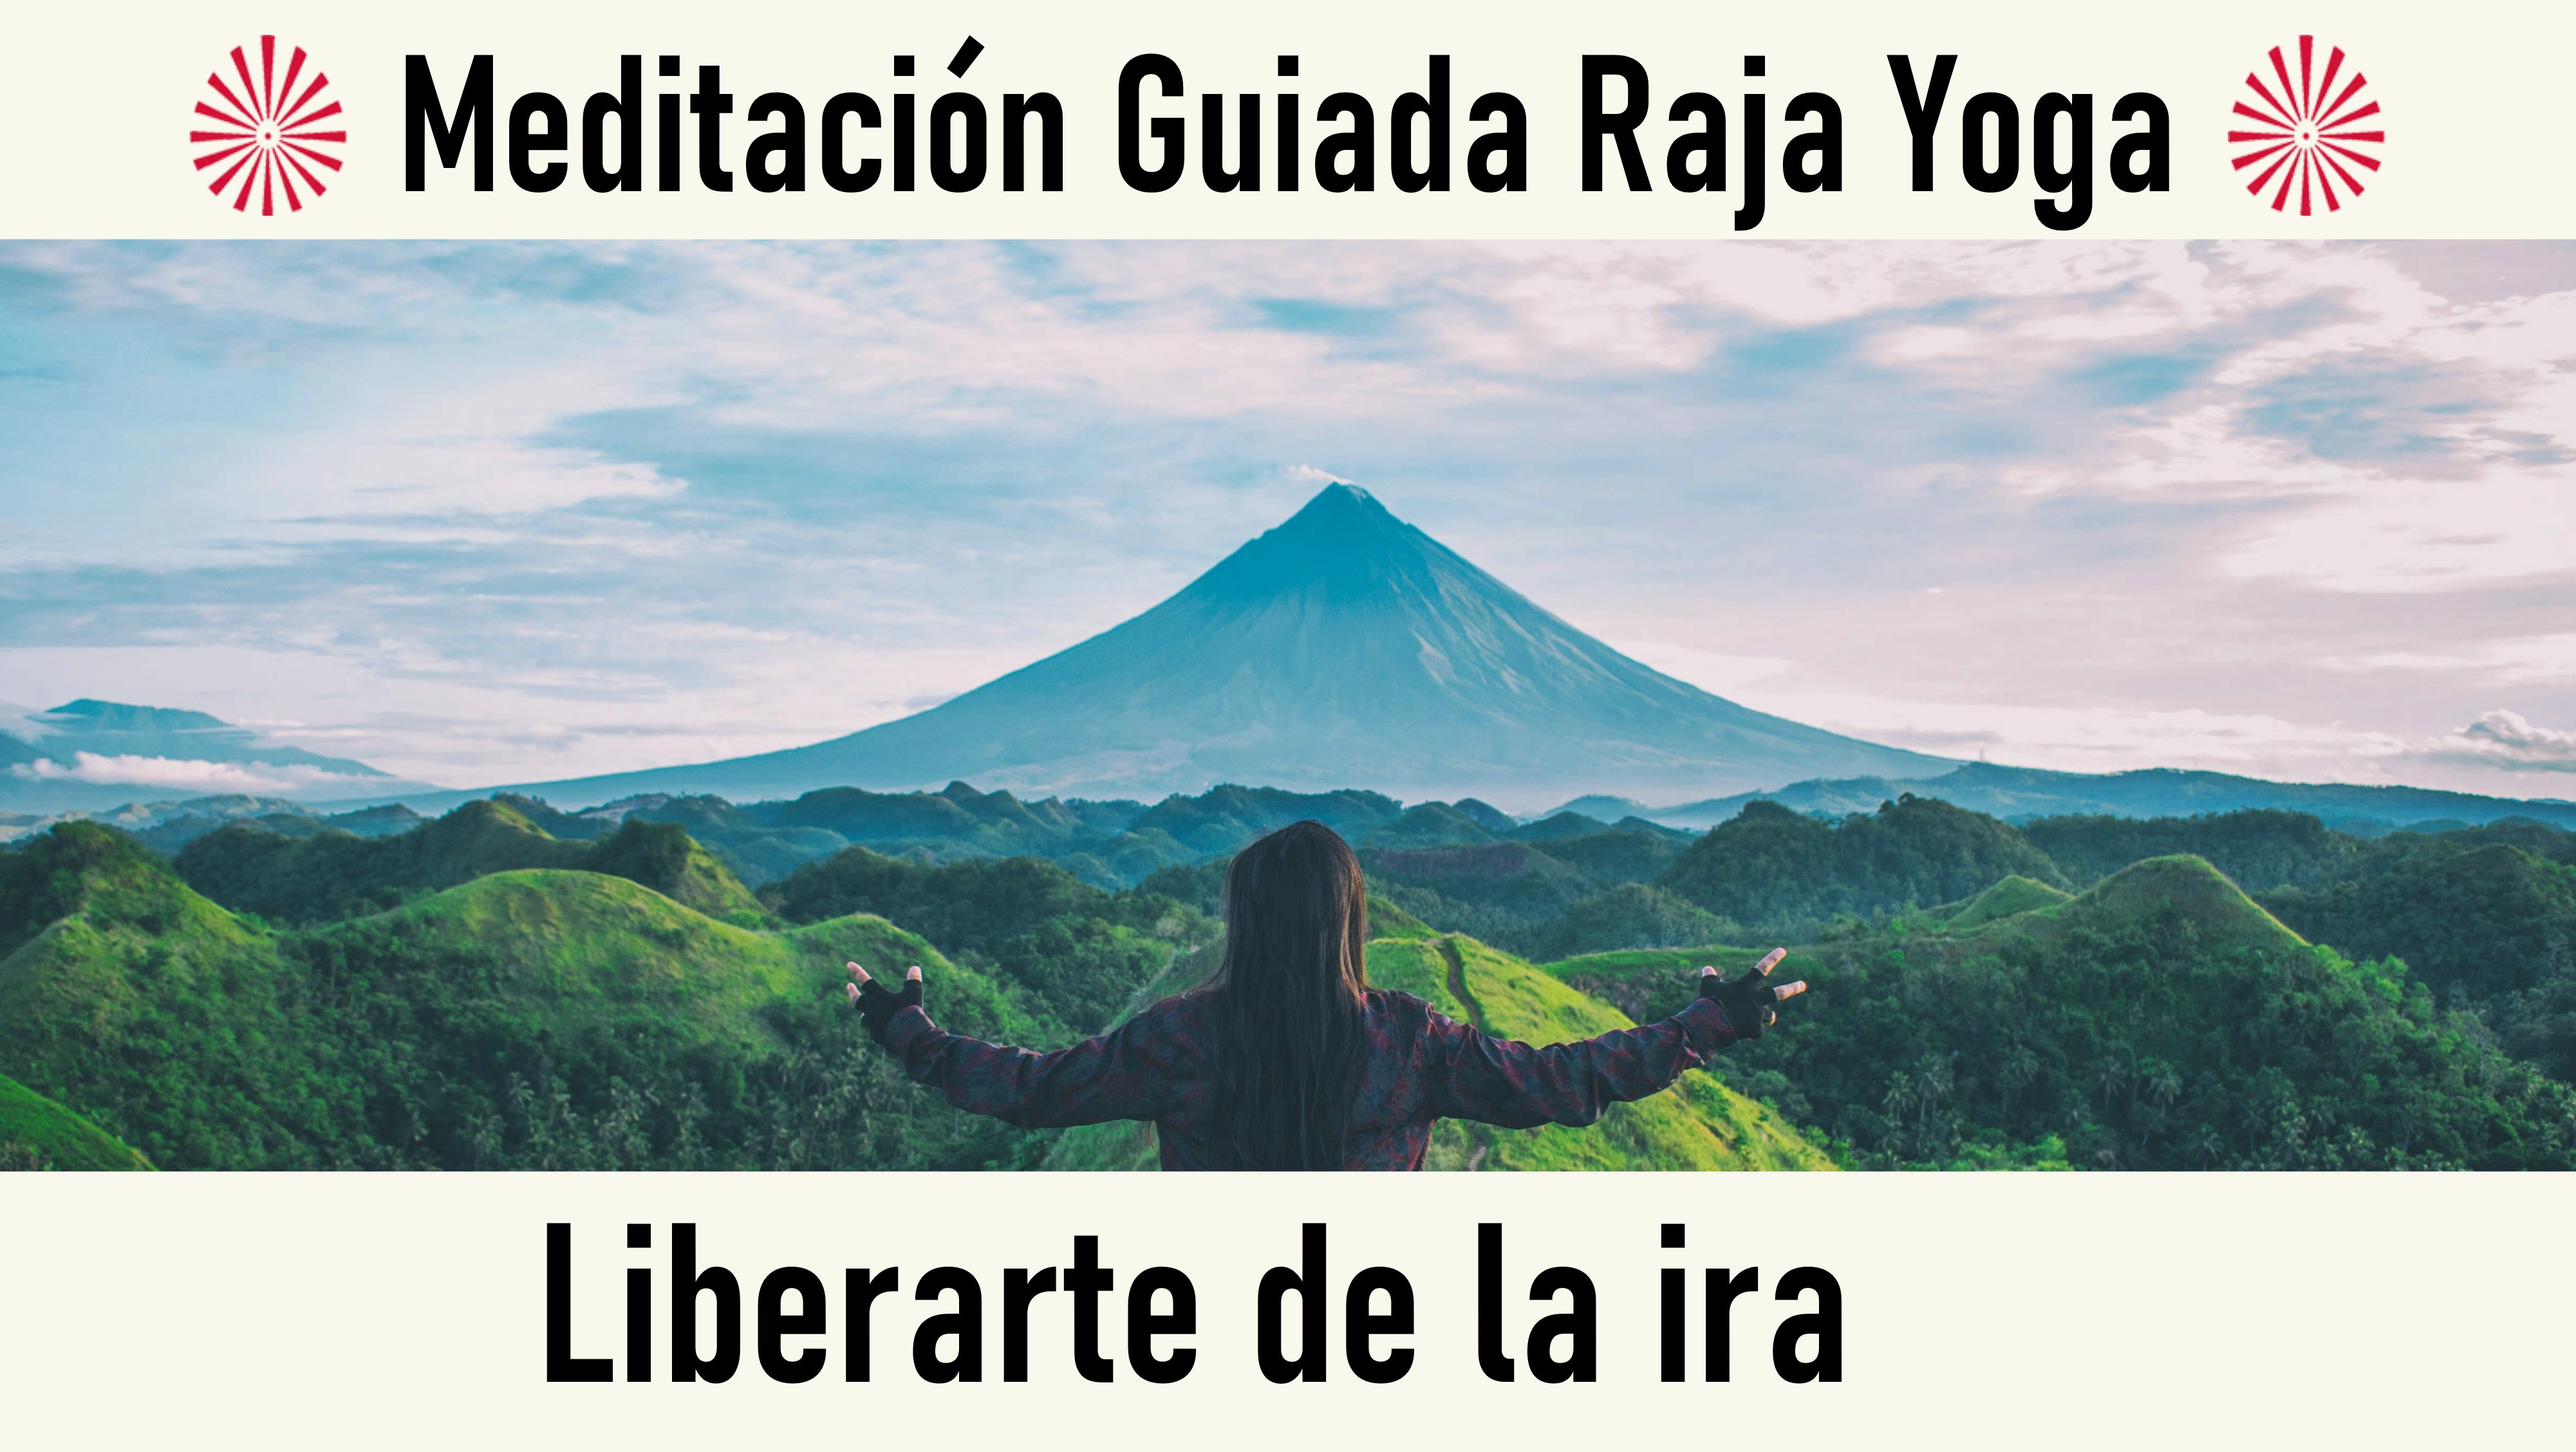 Meditación Raja Yoga: Liberarte de la ira (26 Septiembre 2020) On-line desde Valencia